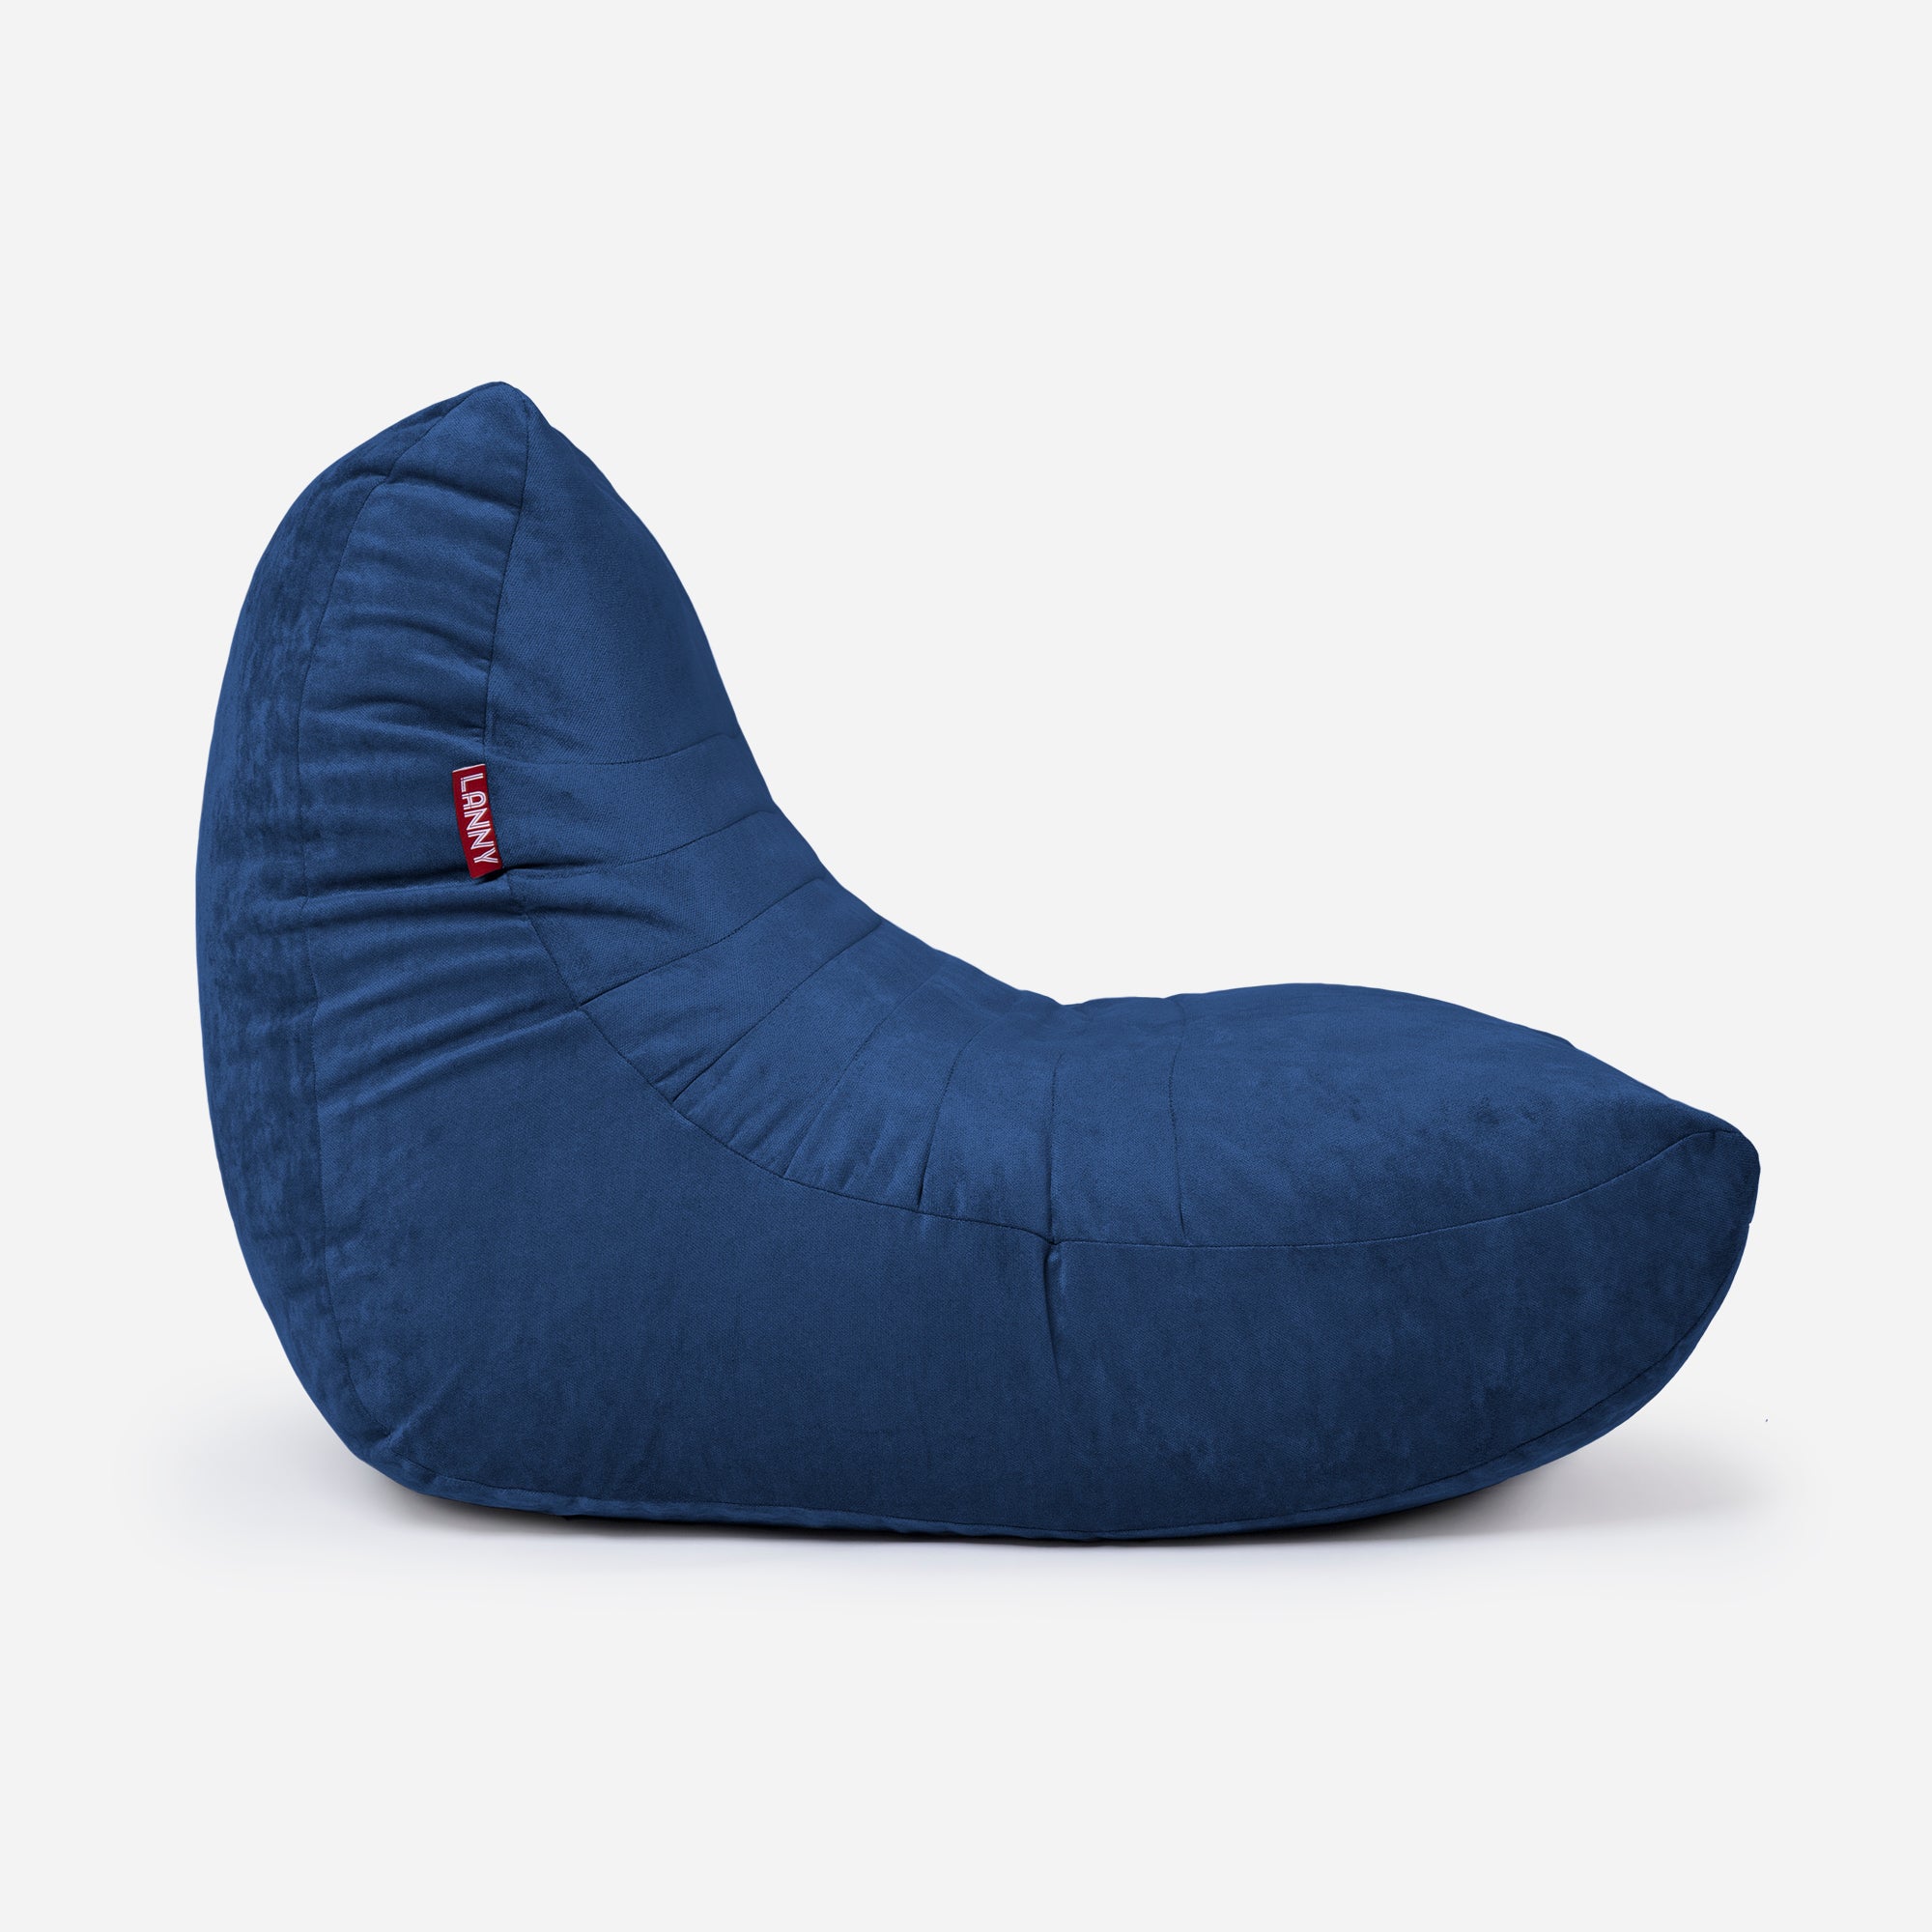 Curvy Aldo Blue Bean Bag Chair